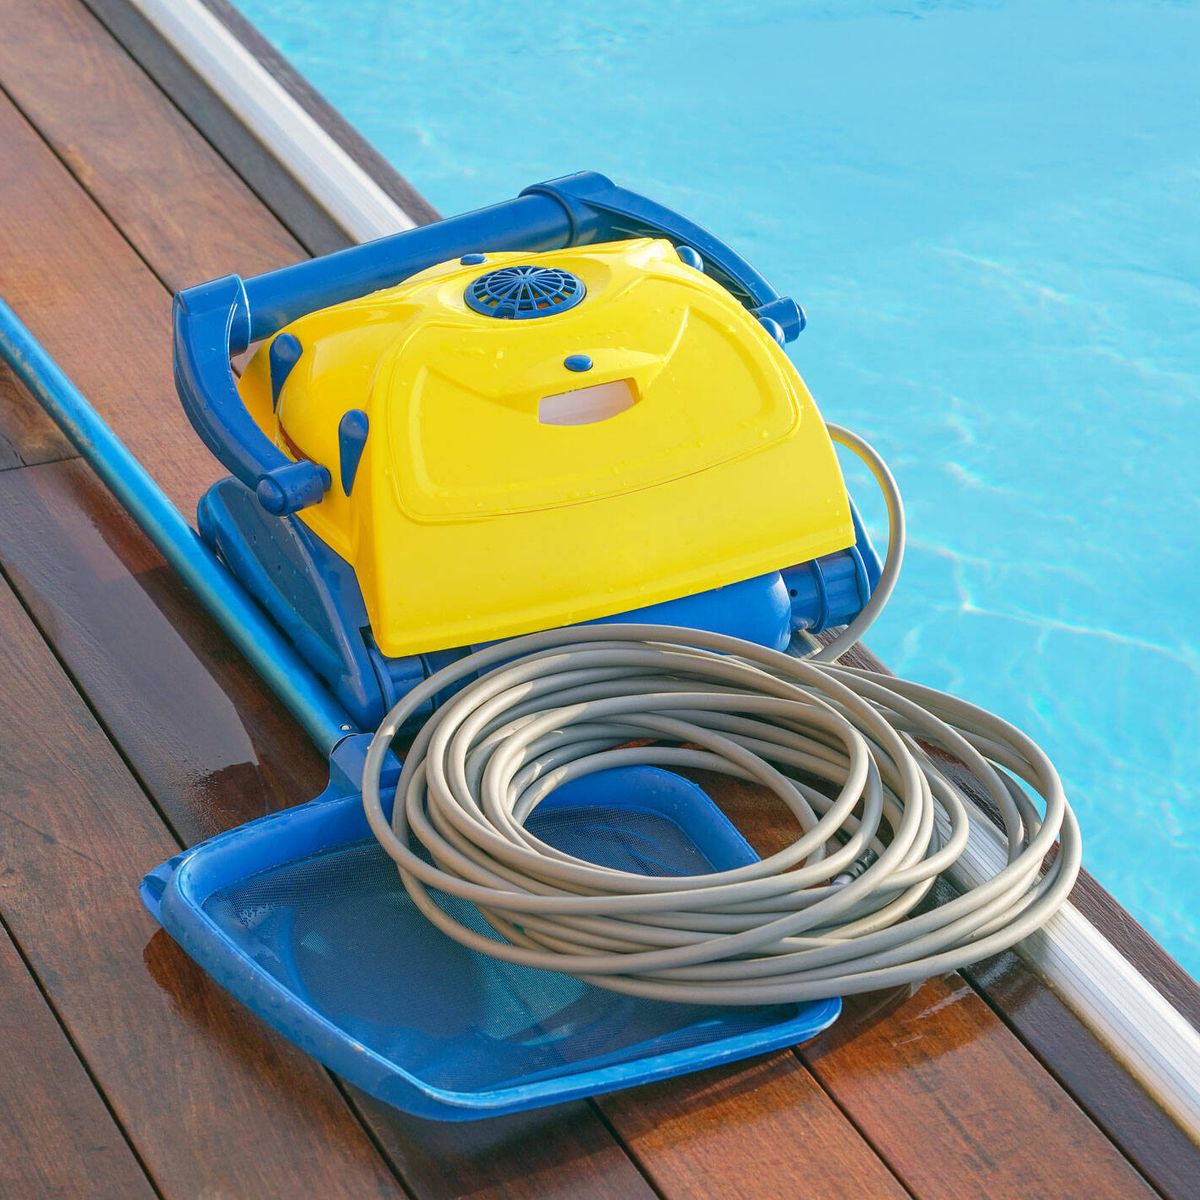 Consigue el mejor robot limpiafondos para tu piscina